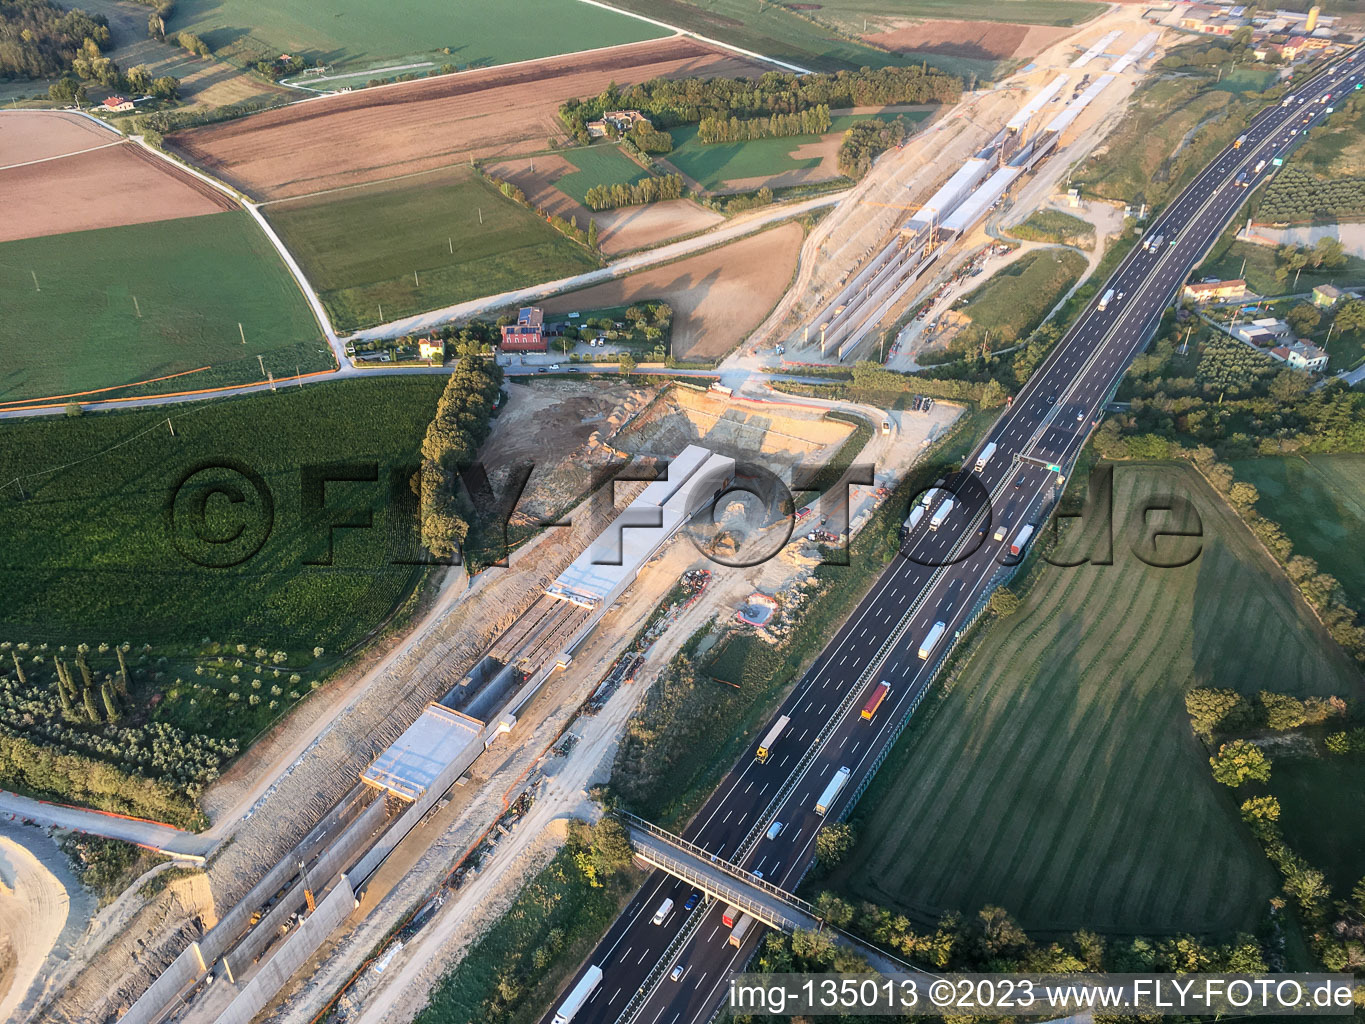 Schrägluftbild von Tunnelbaustelle längs der A4 in Desenzano del Garda im Bundesland Brescia, Italien